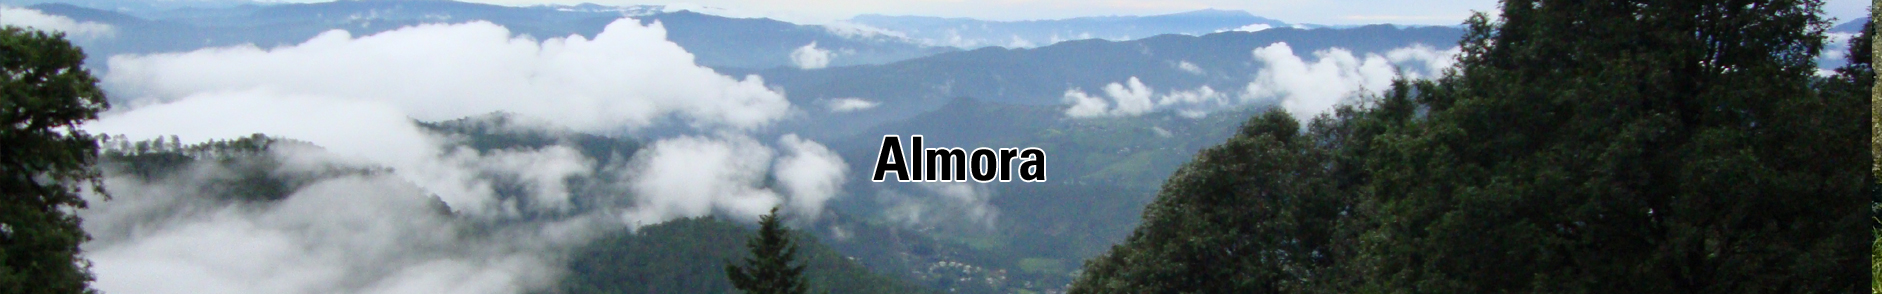 almora-hill-station